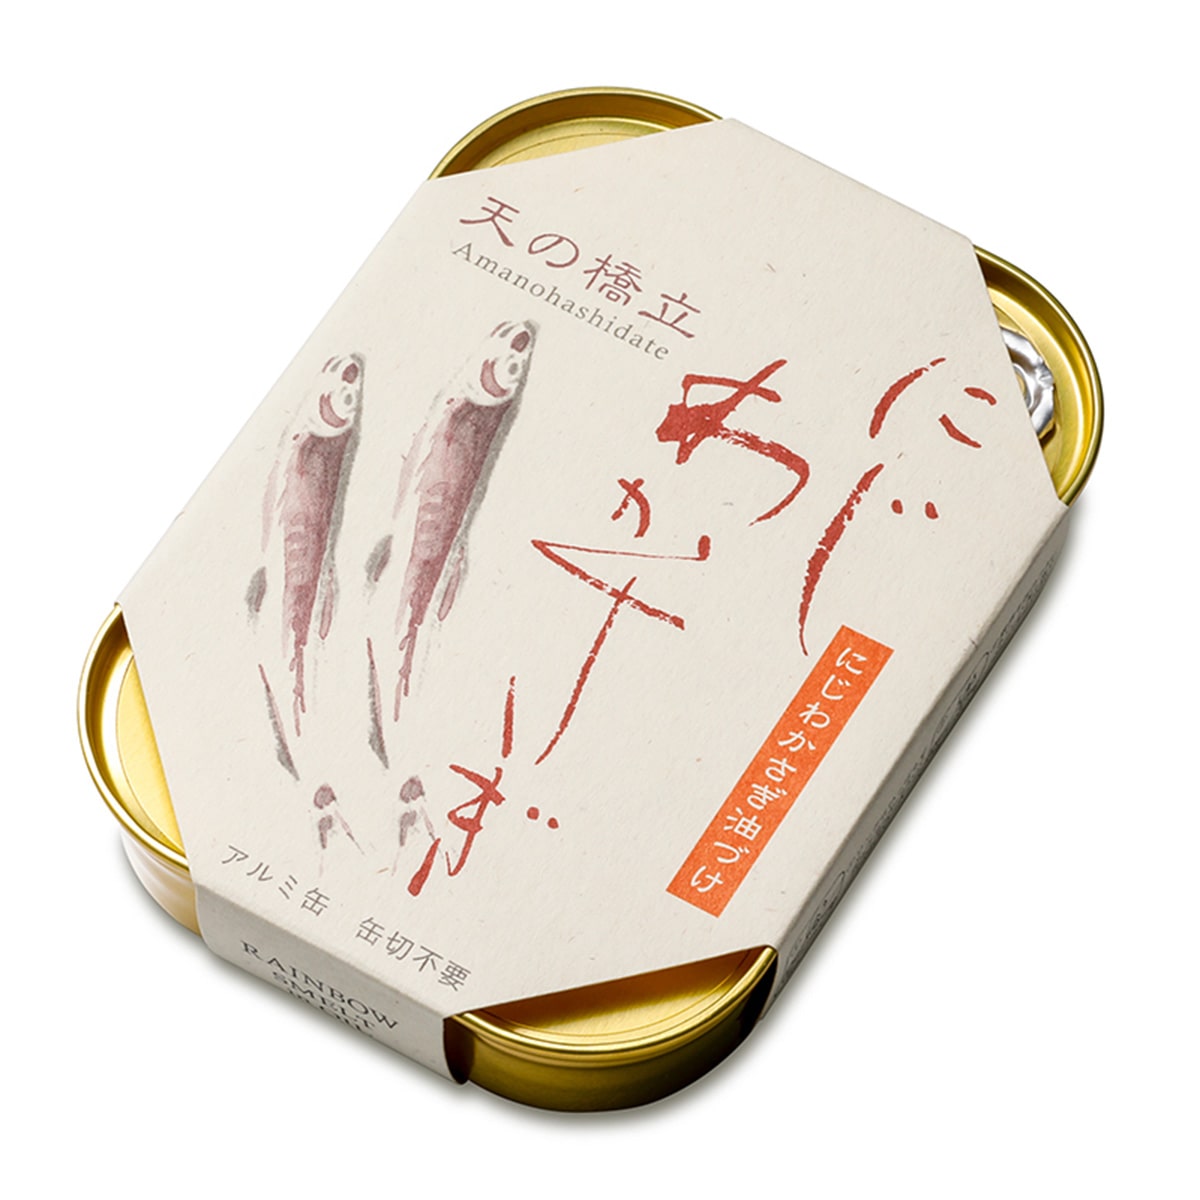 【竹中罐詰】旅サラダマルシェ限定セット(10点入り)